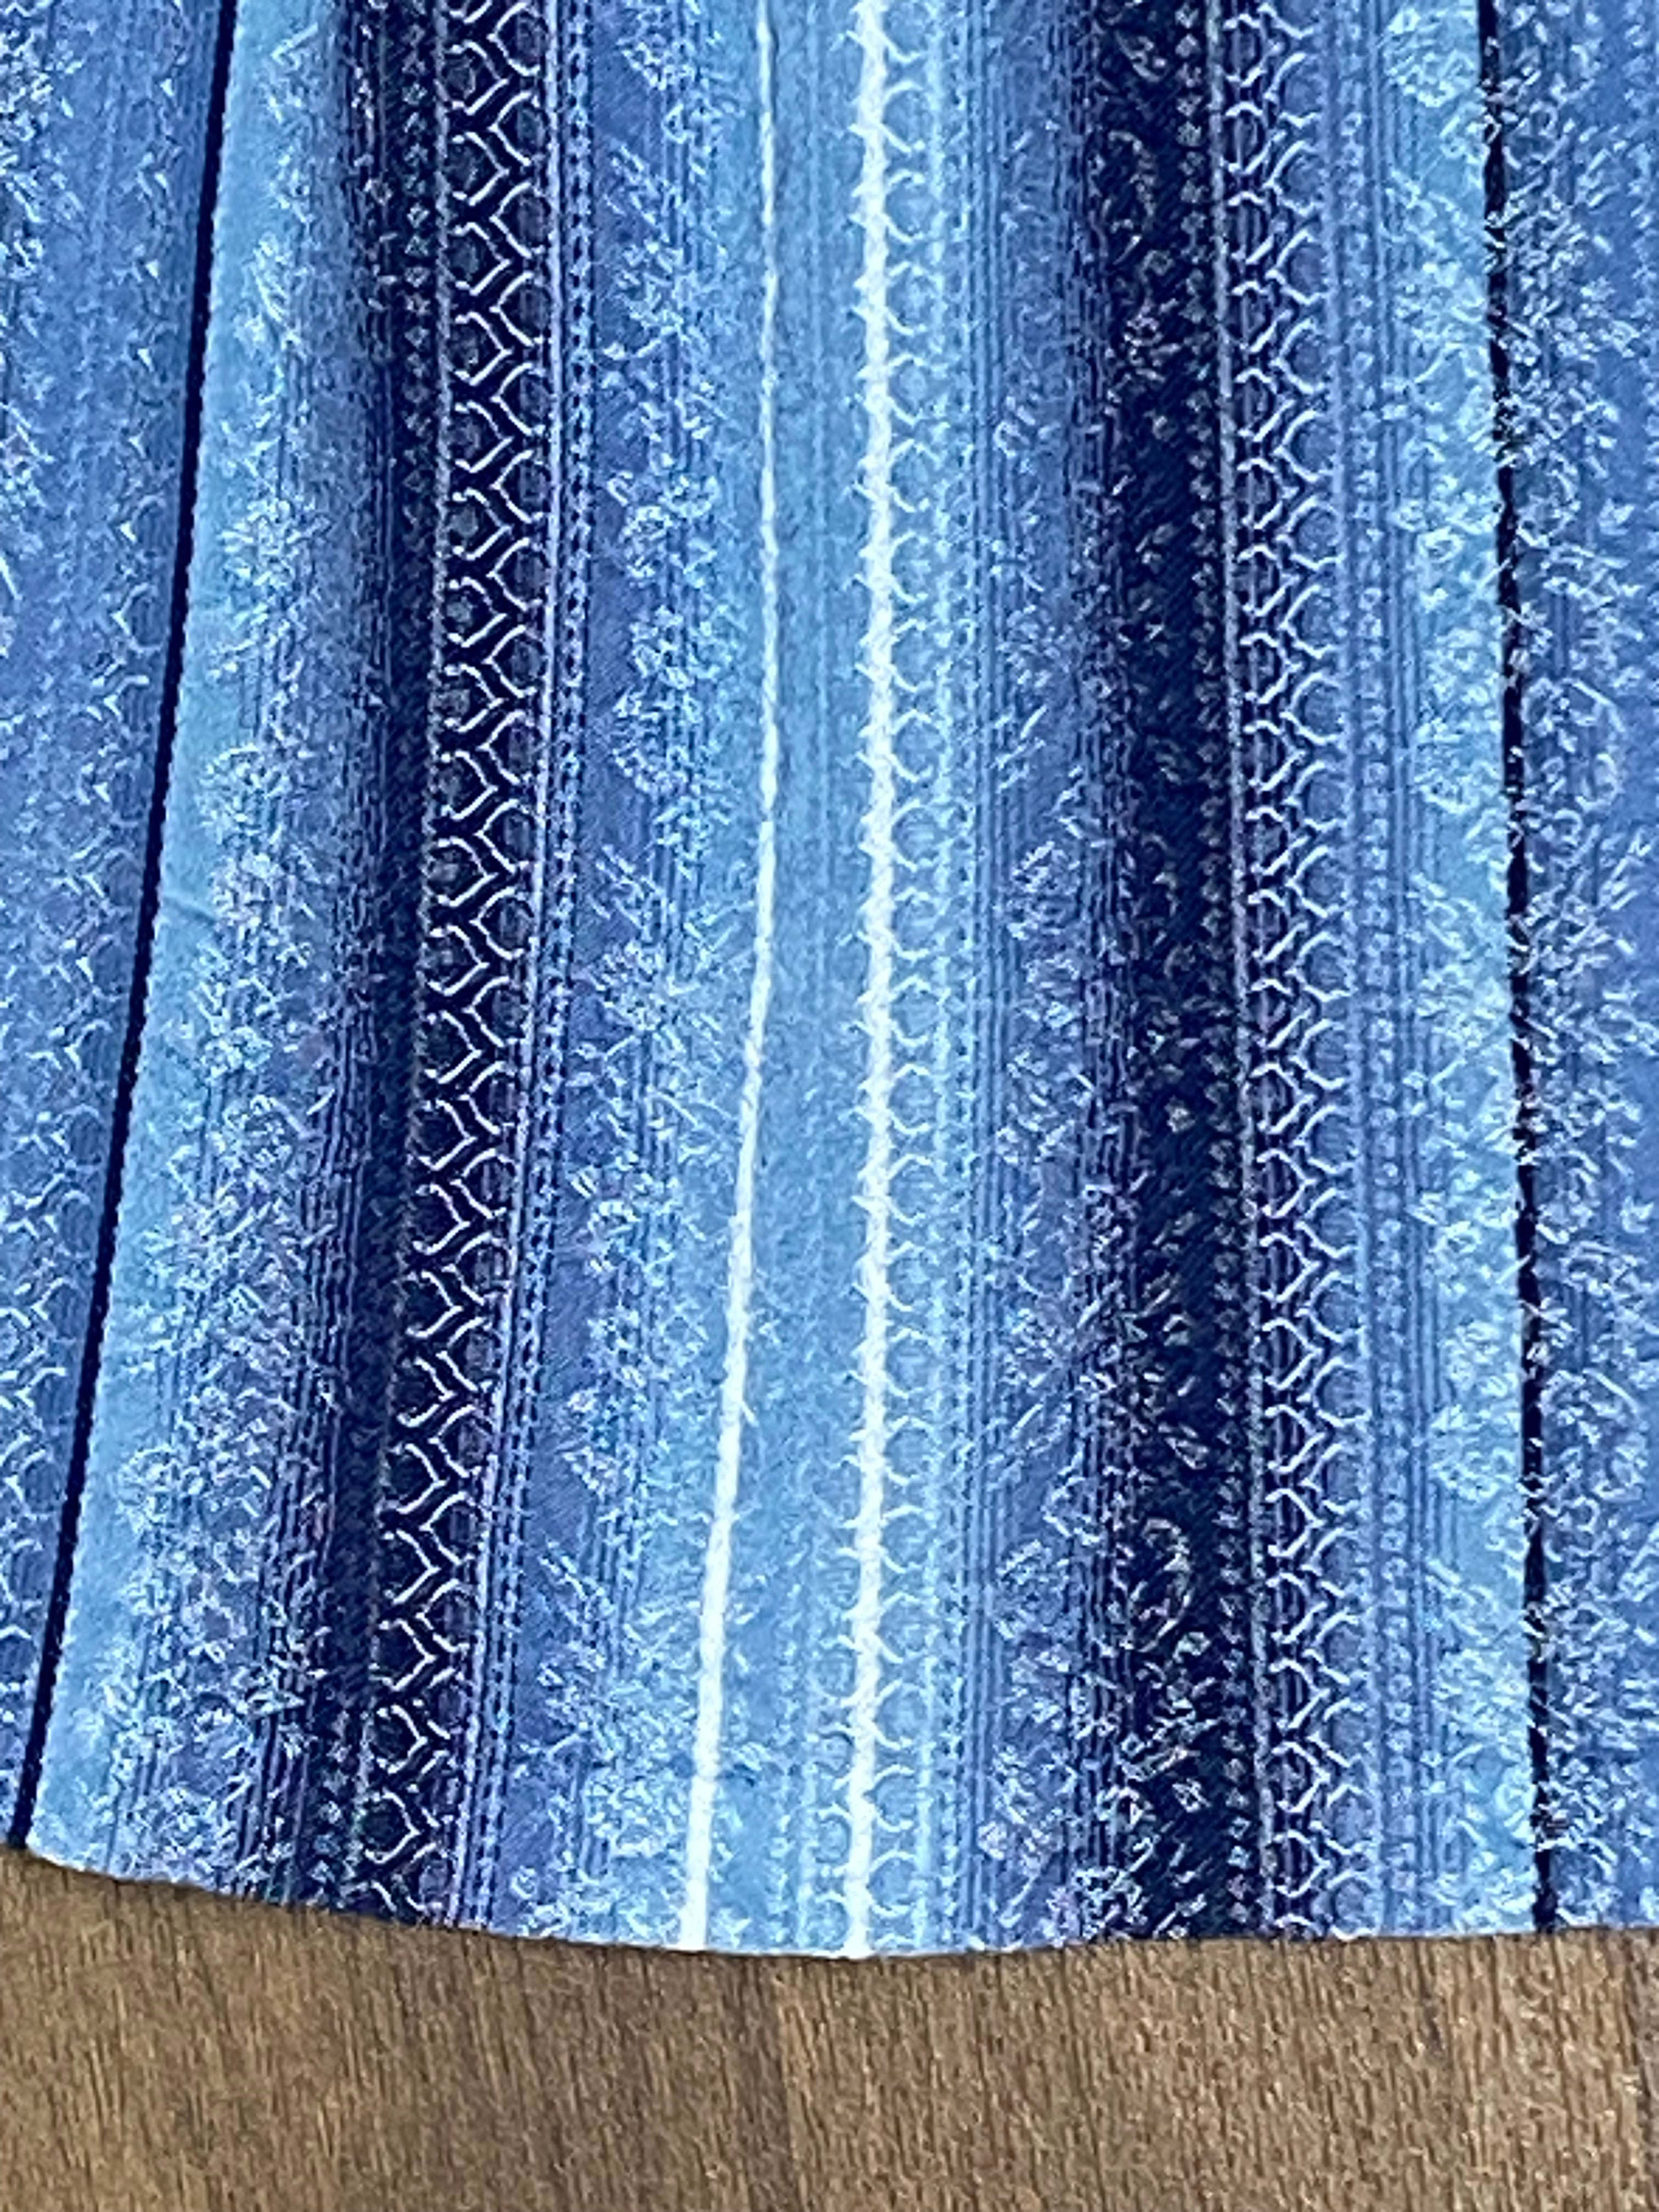 Trachtenschürze Dirndlschürze Vintage Länge 68 cm, Farbe hellblau, blau und weiß